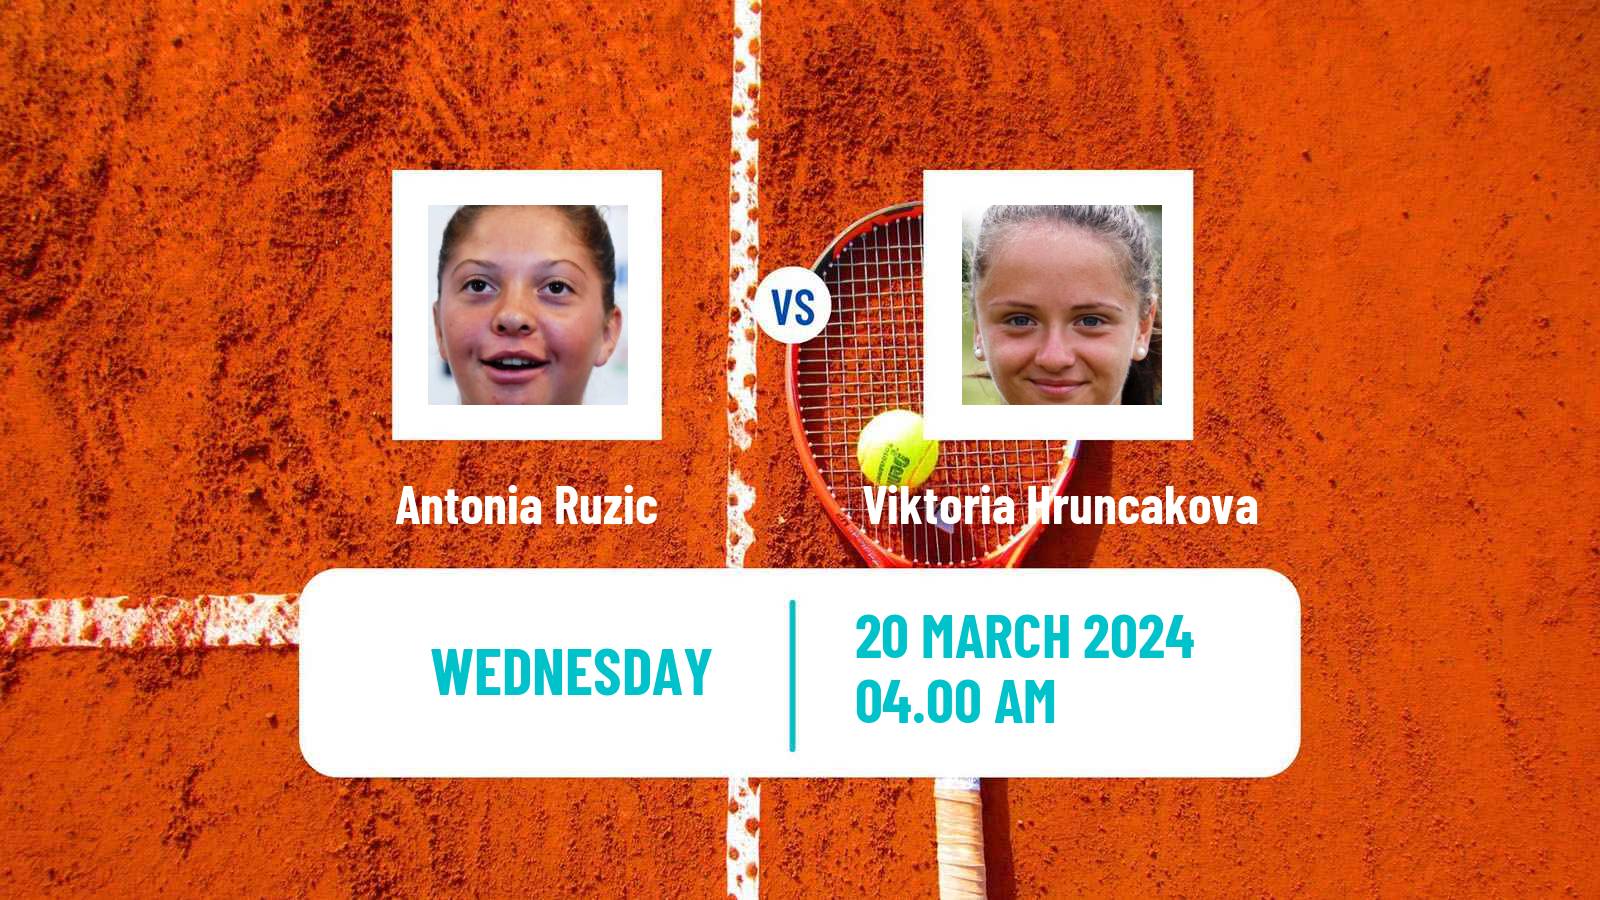 Tennis ITF W75 MarIBOr Women Antonia Ruzic - Viktoria Hruncakova